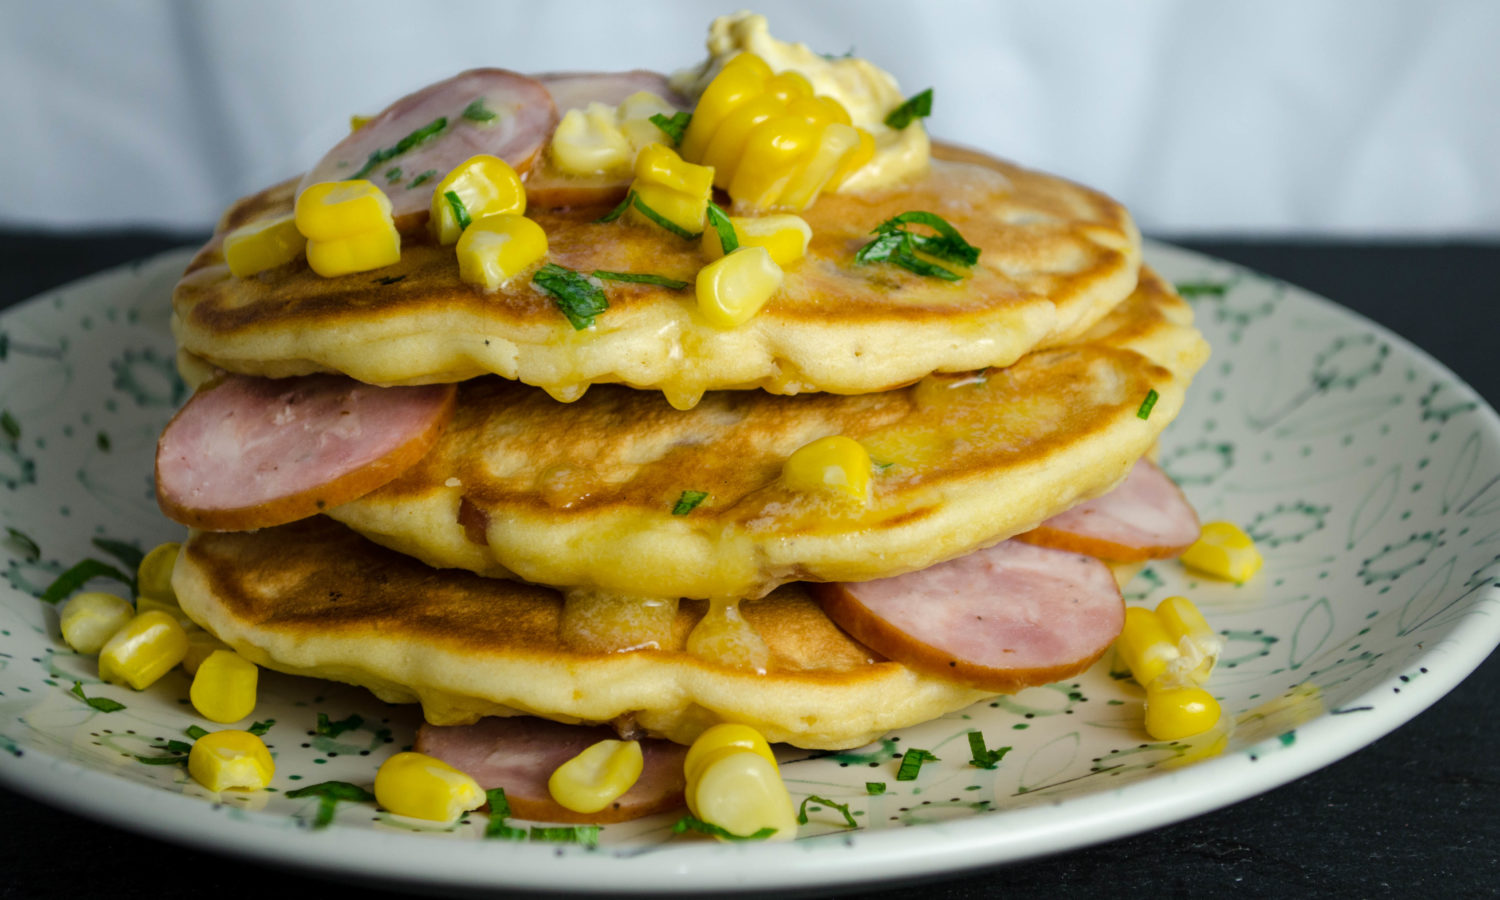 Corn and Kielbasa savory pancakes with Dijon mustard and sour cream - Diversivore.com